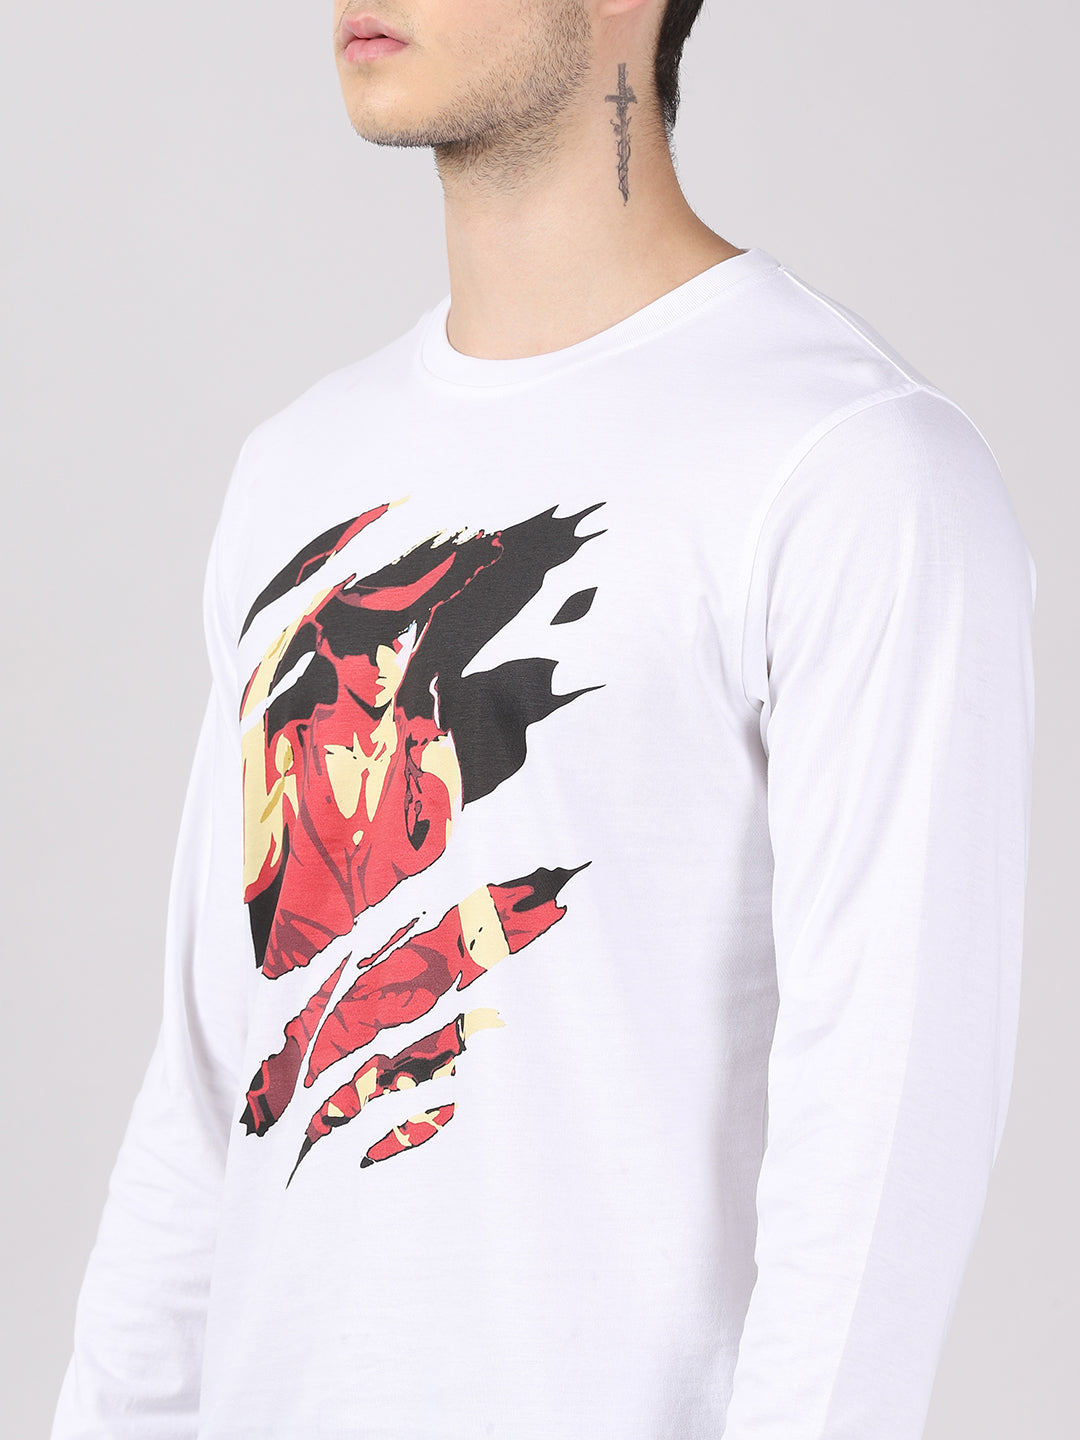 Round White Anime Tshirt Half Sleeves Printed